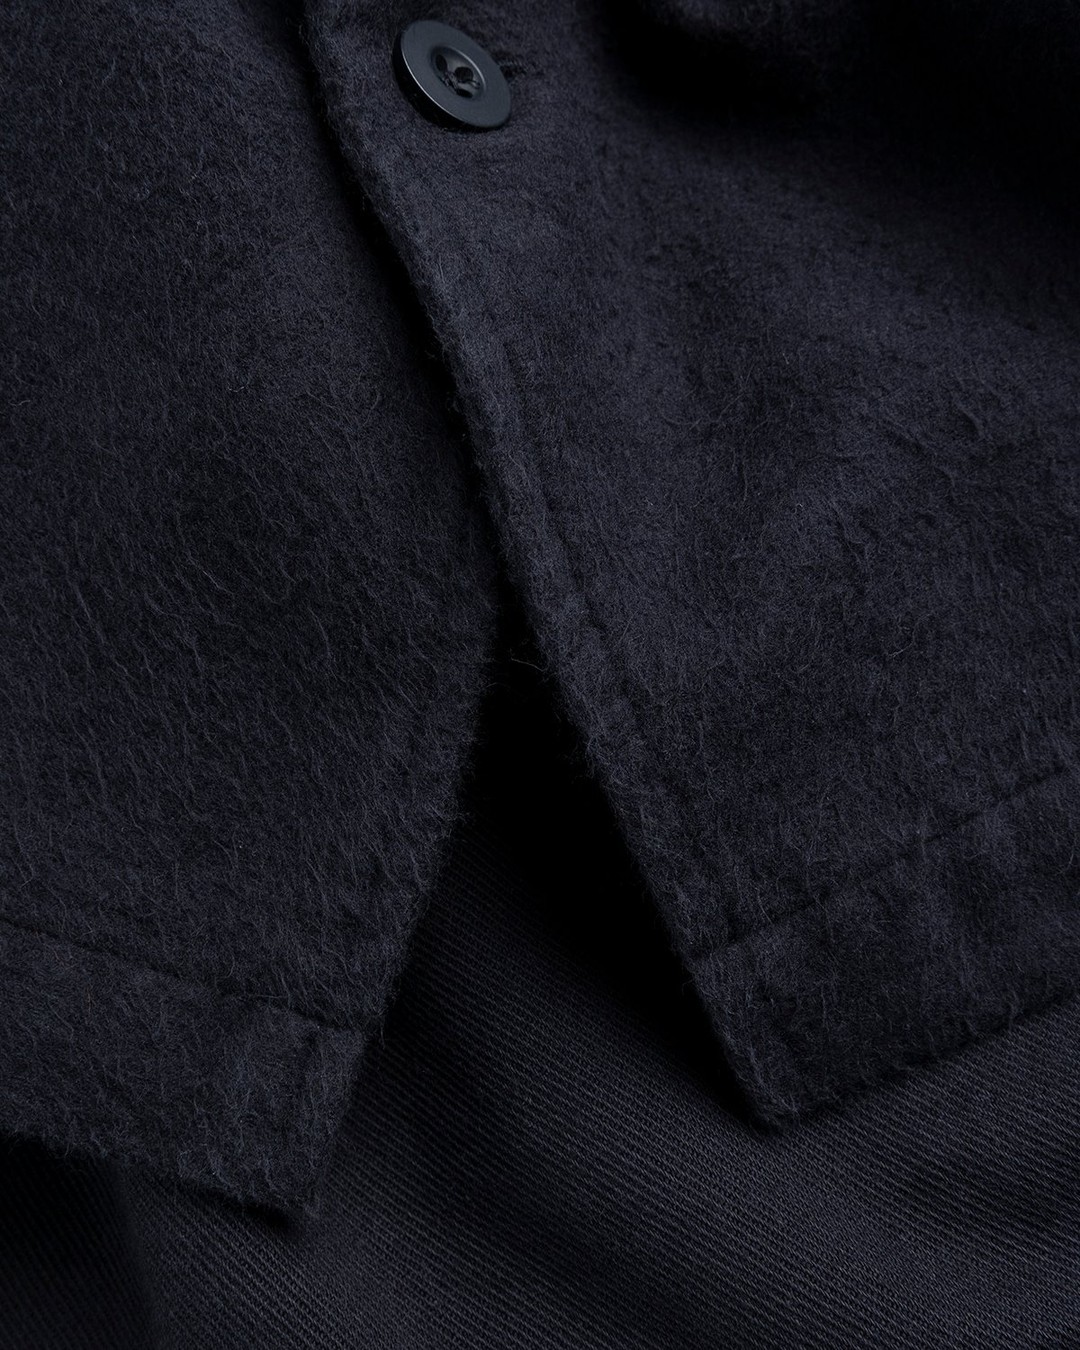 Our Legacy – Evening Coach Jacket Black Brushed - Overshirt - Black - Image 6